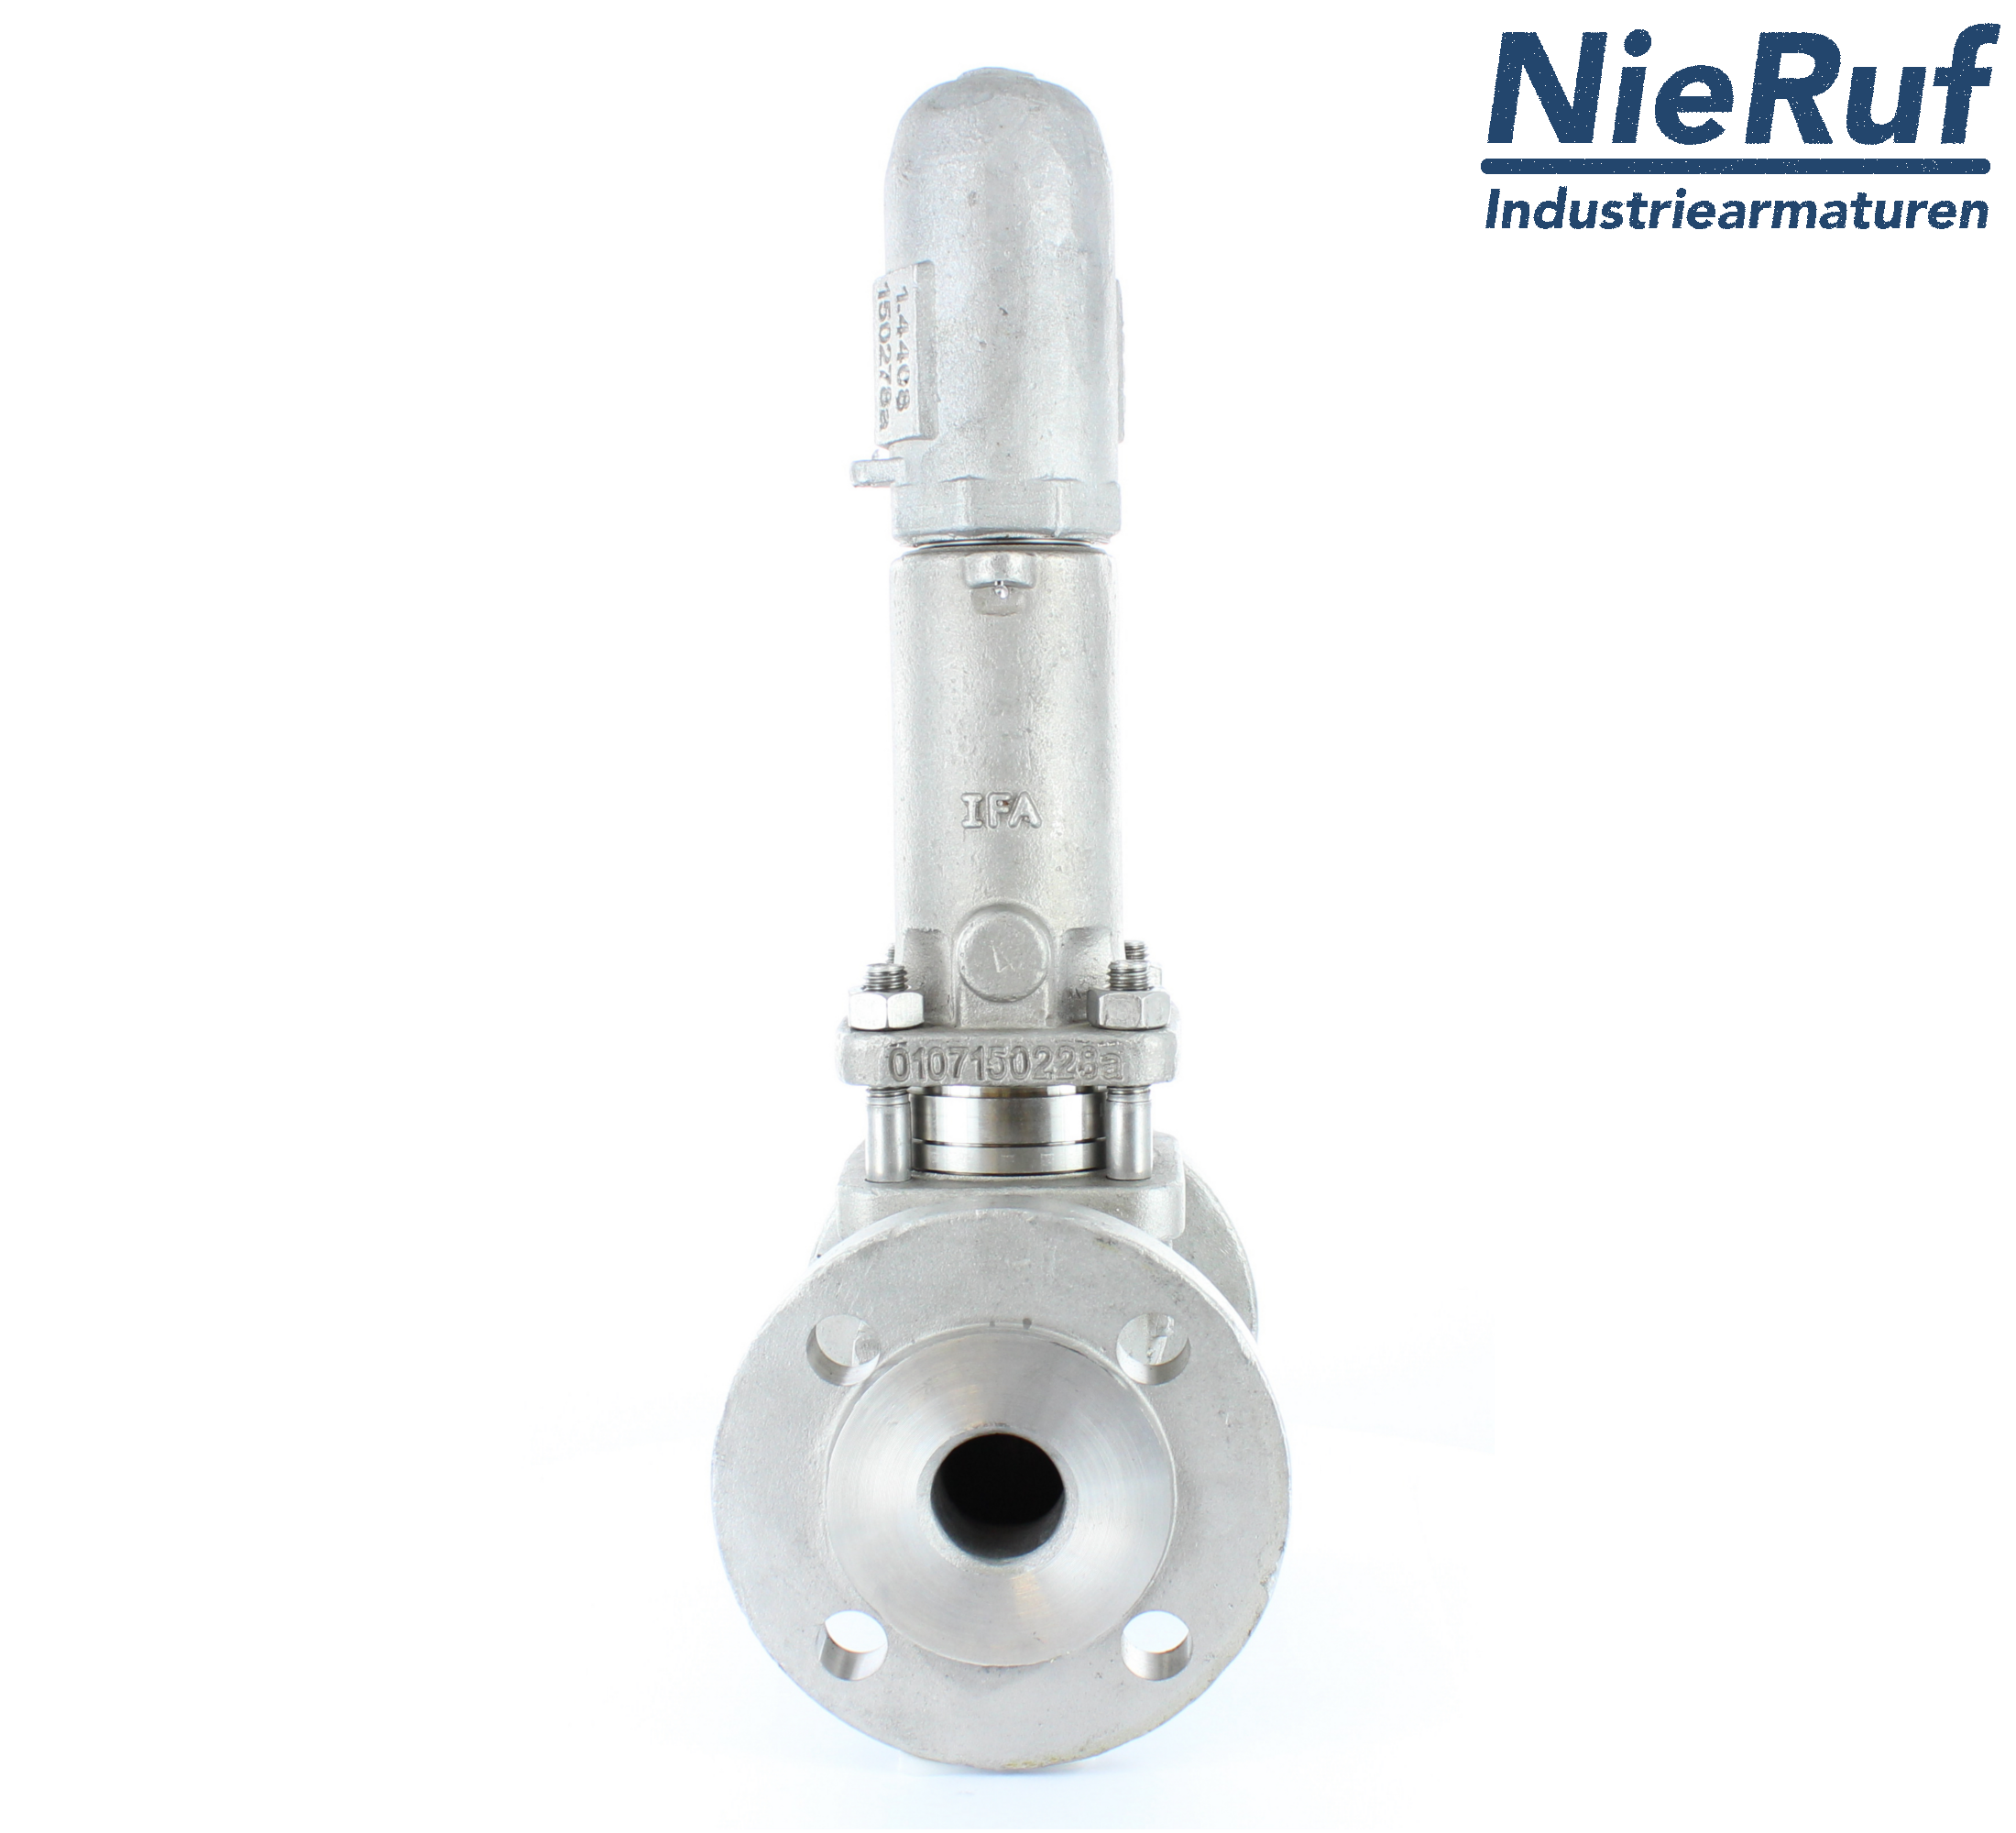 piston overflow valve DN 15 UV13 cast iron 1.0619+N 2,0 - 5,0 bar